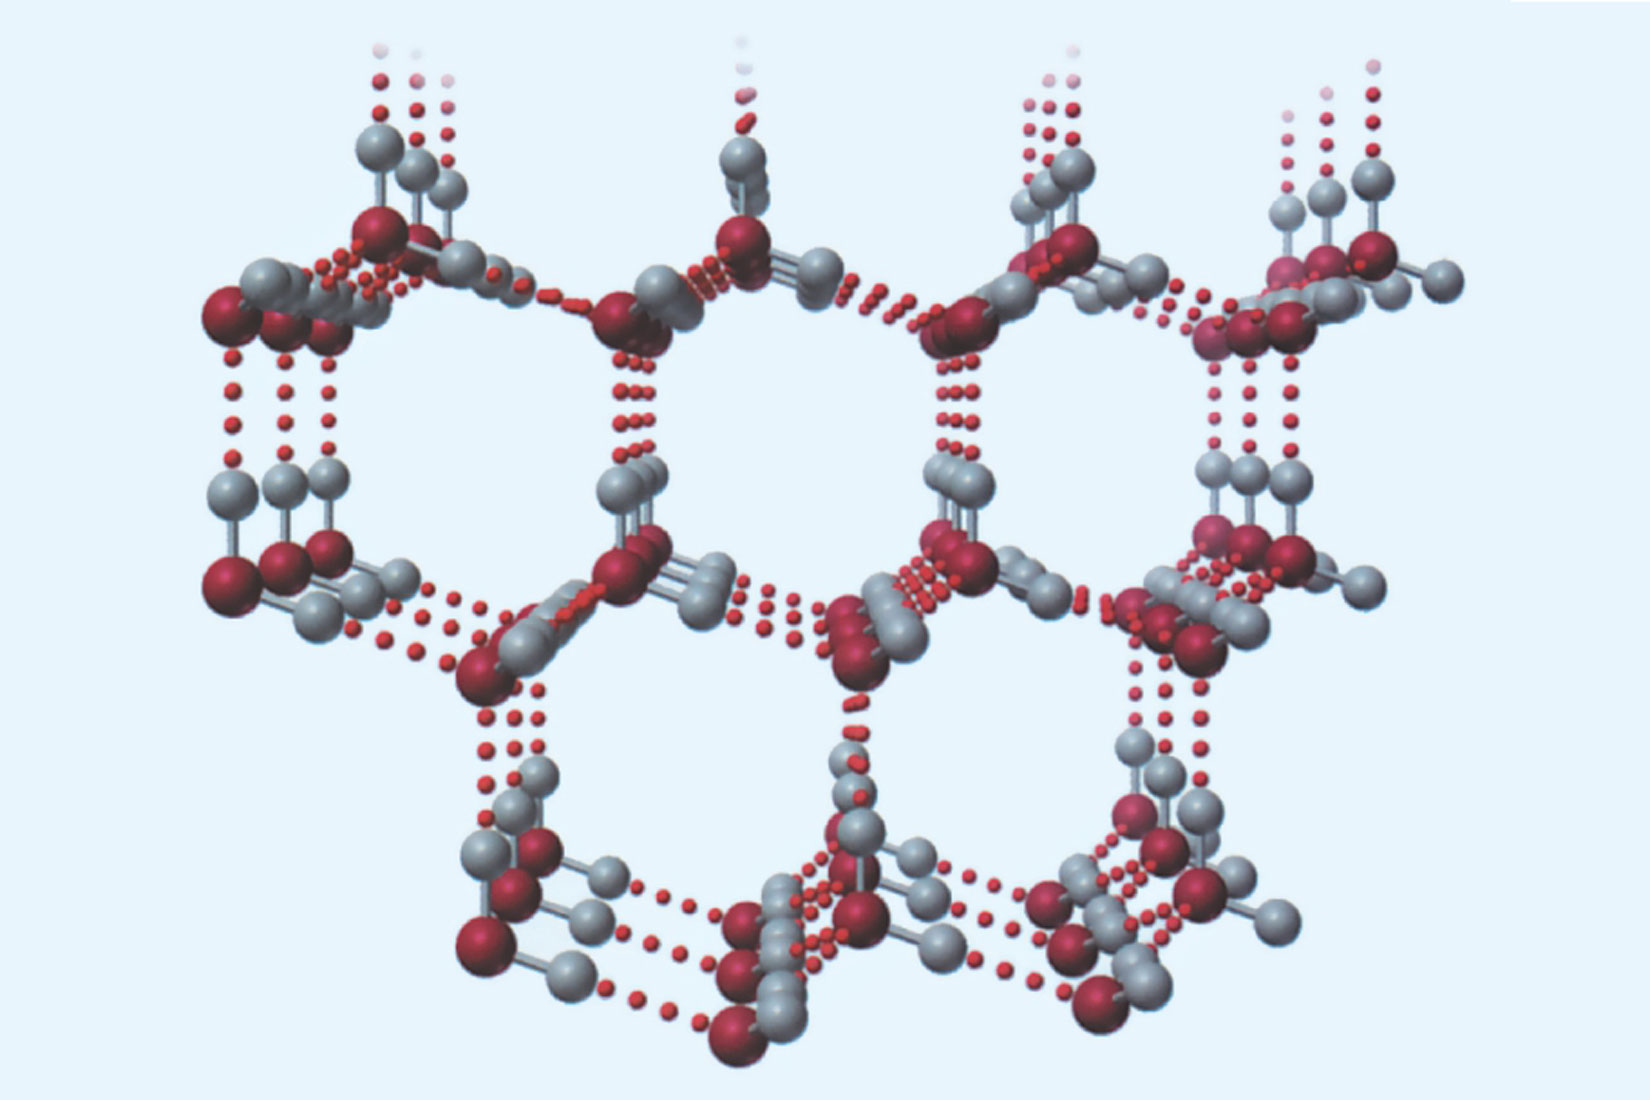 Molekule i vodikova veza su prikazane kao i na prethodnoj fotografiji.Pošto ova fotografija prikazuje kruto agregacijsko stanje, molekule su povezane u nekoliko nizova šesterokuta.